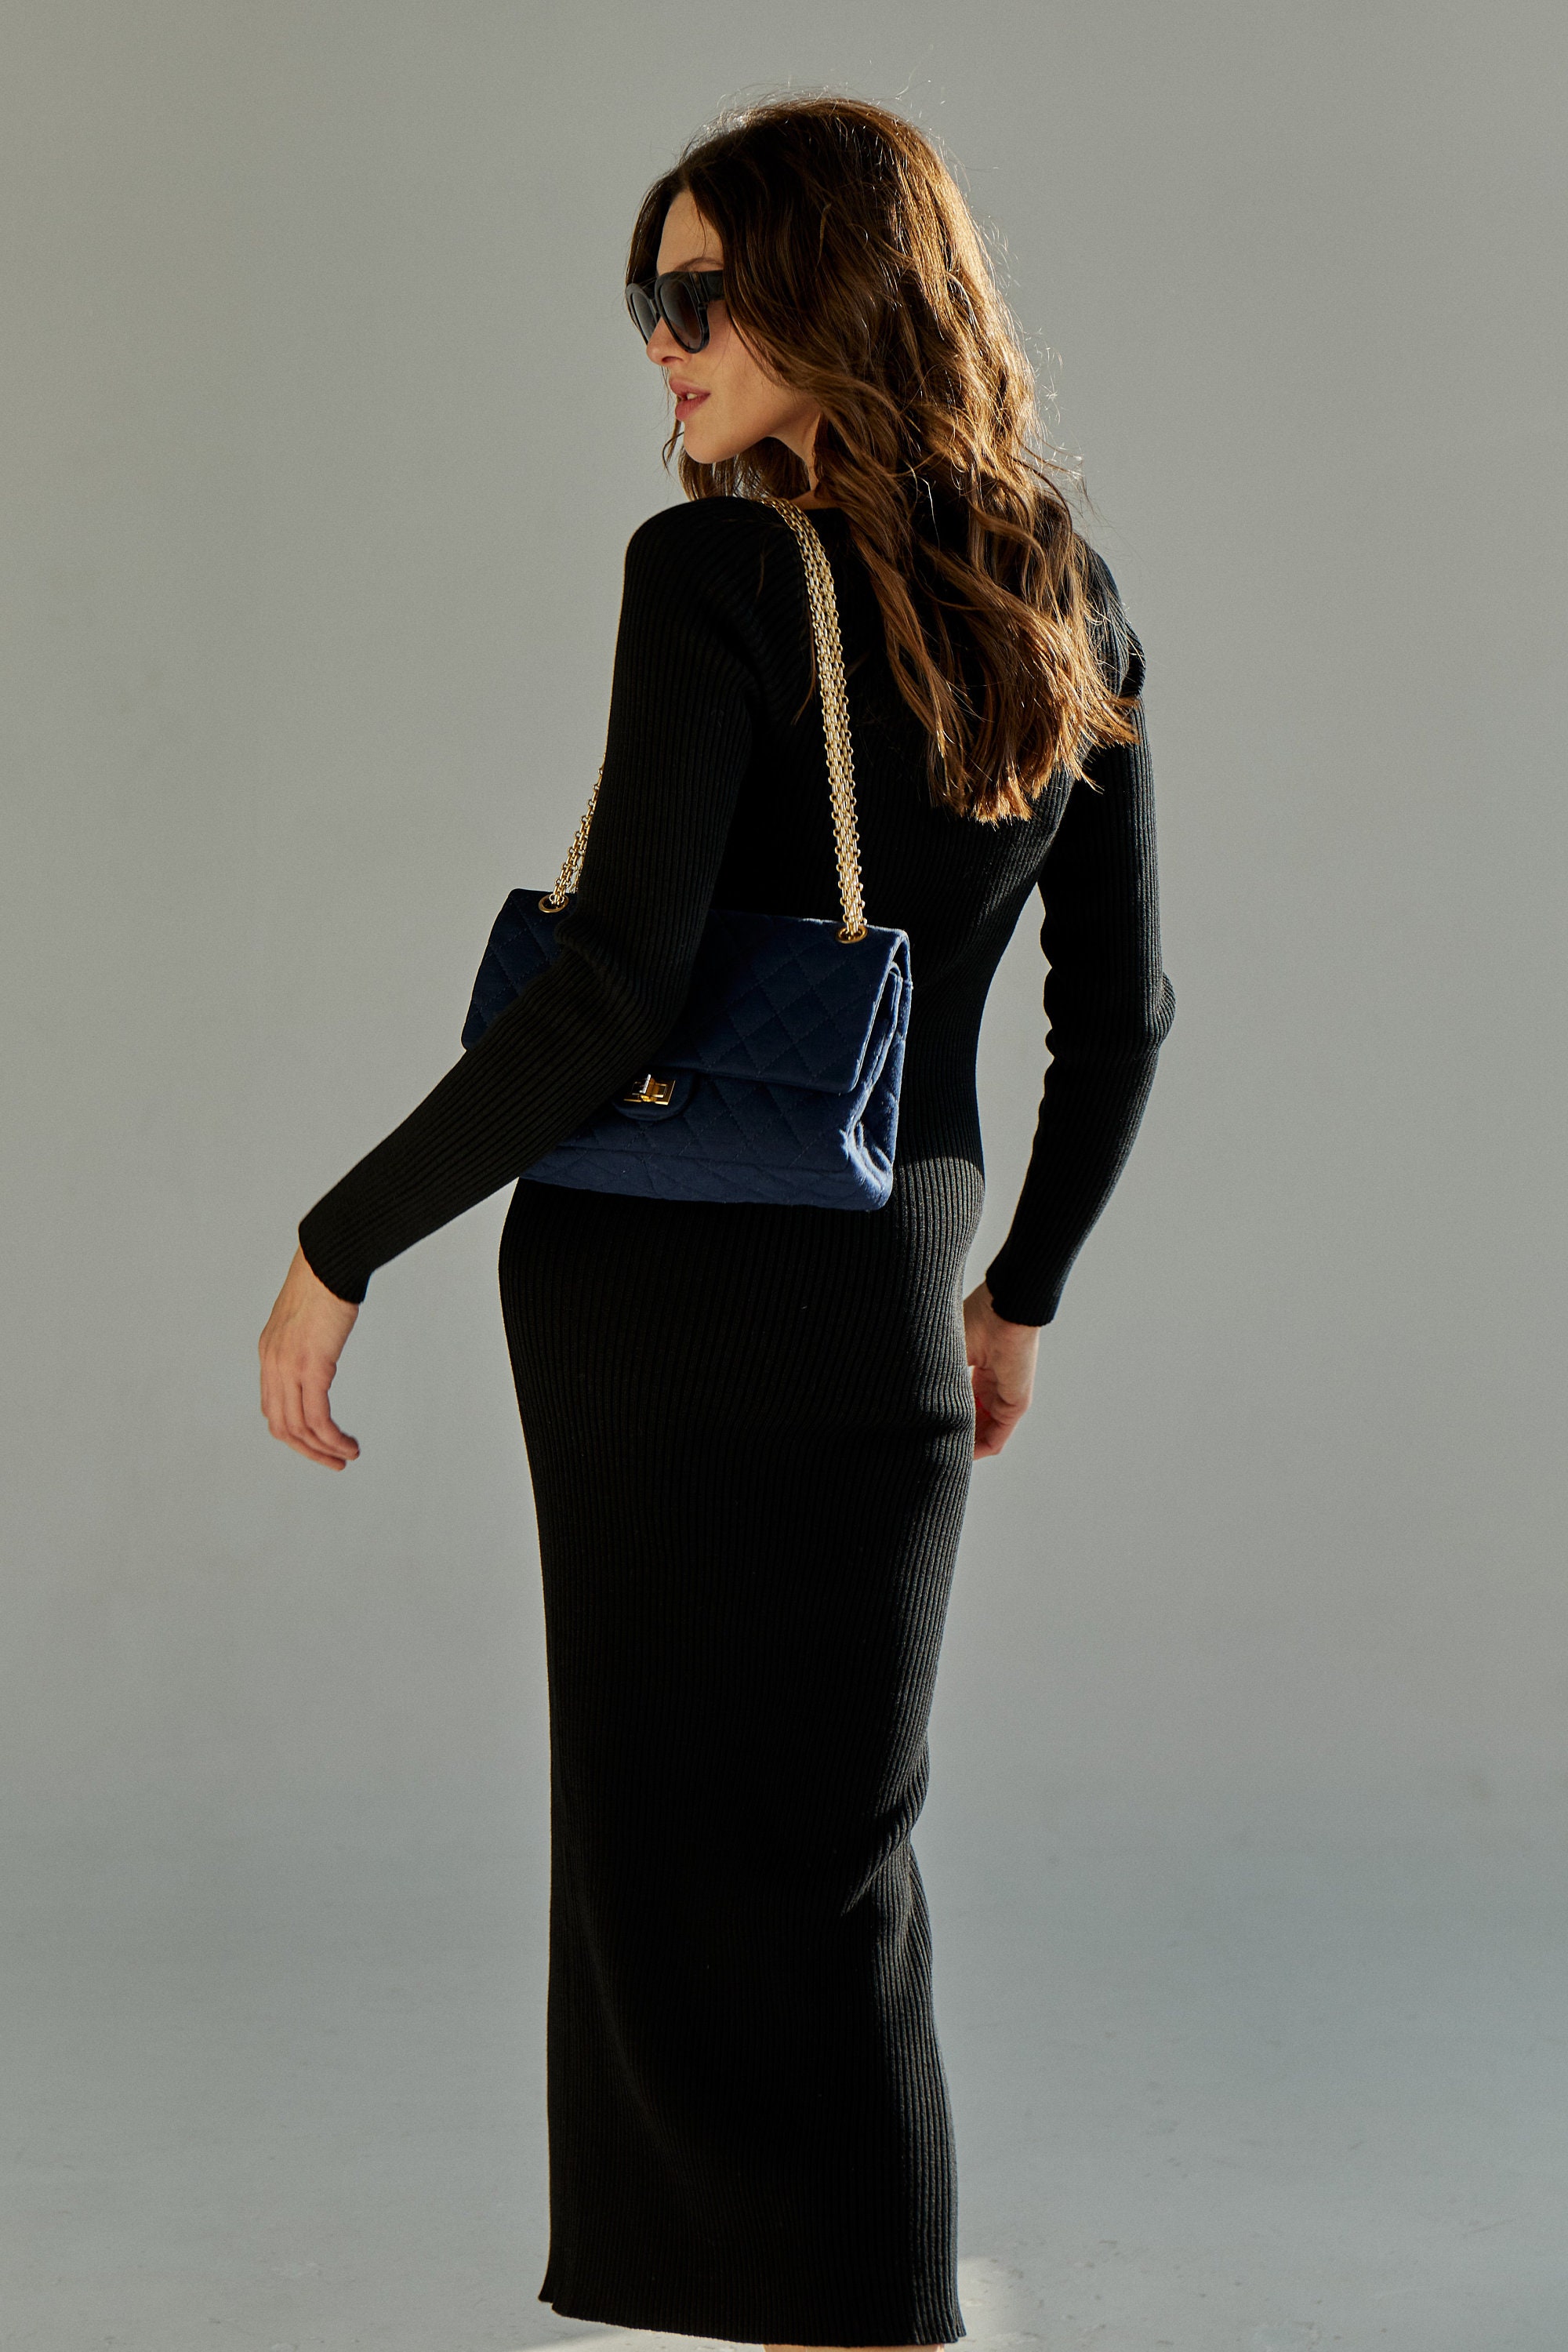 Women's black dress/Long sleeve Knited Dress/Black knitted | Etsy